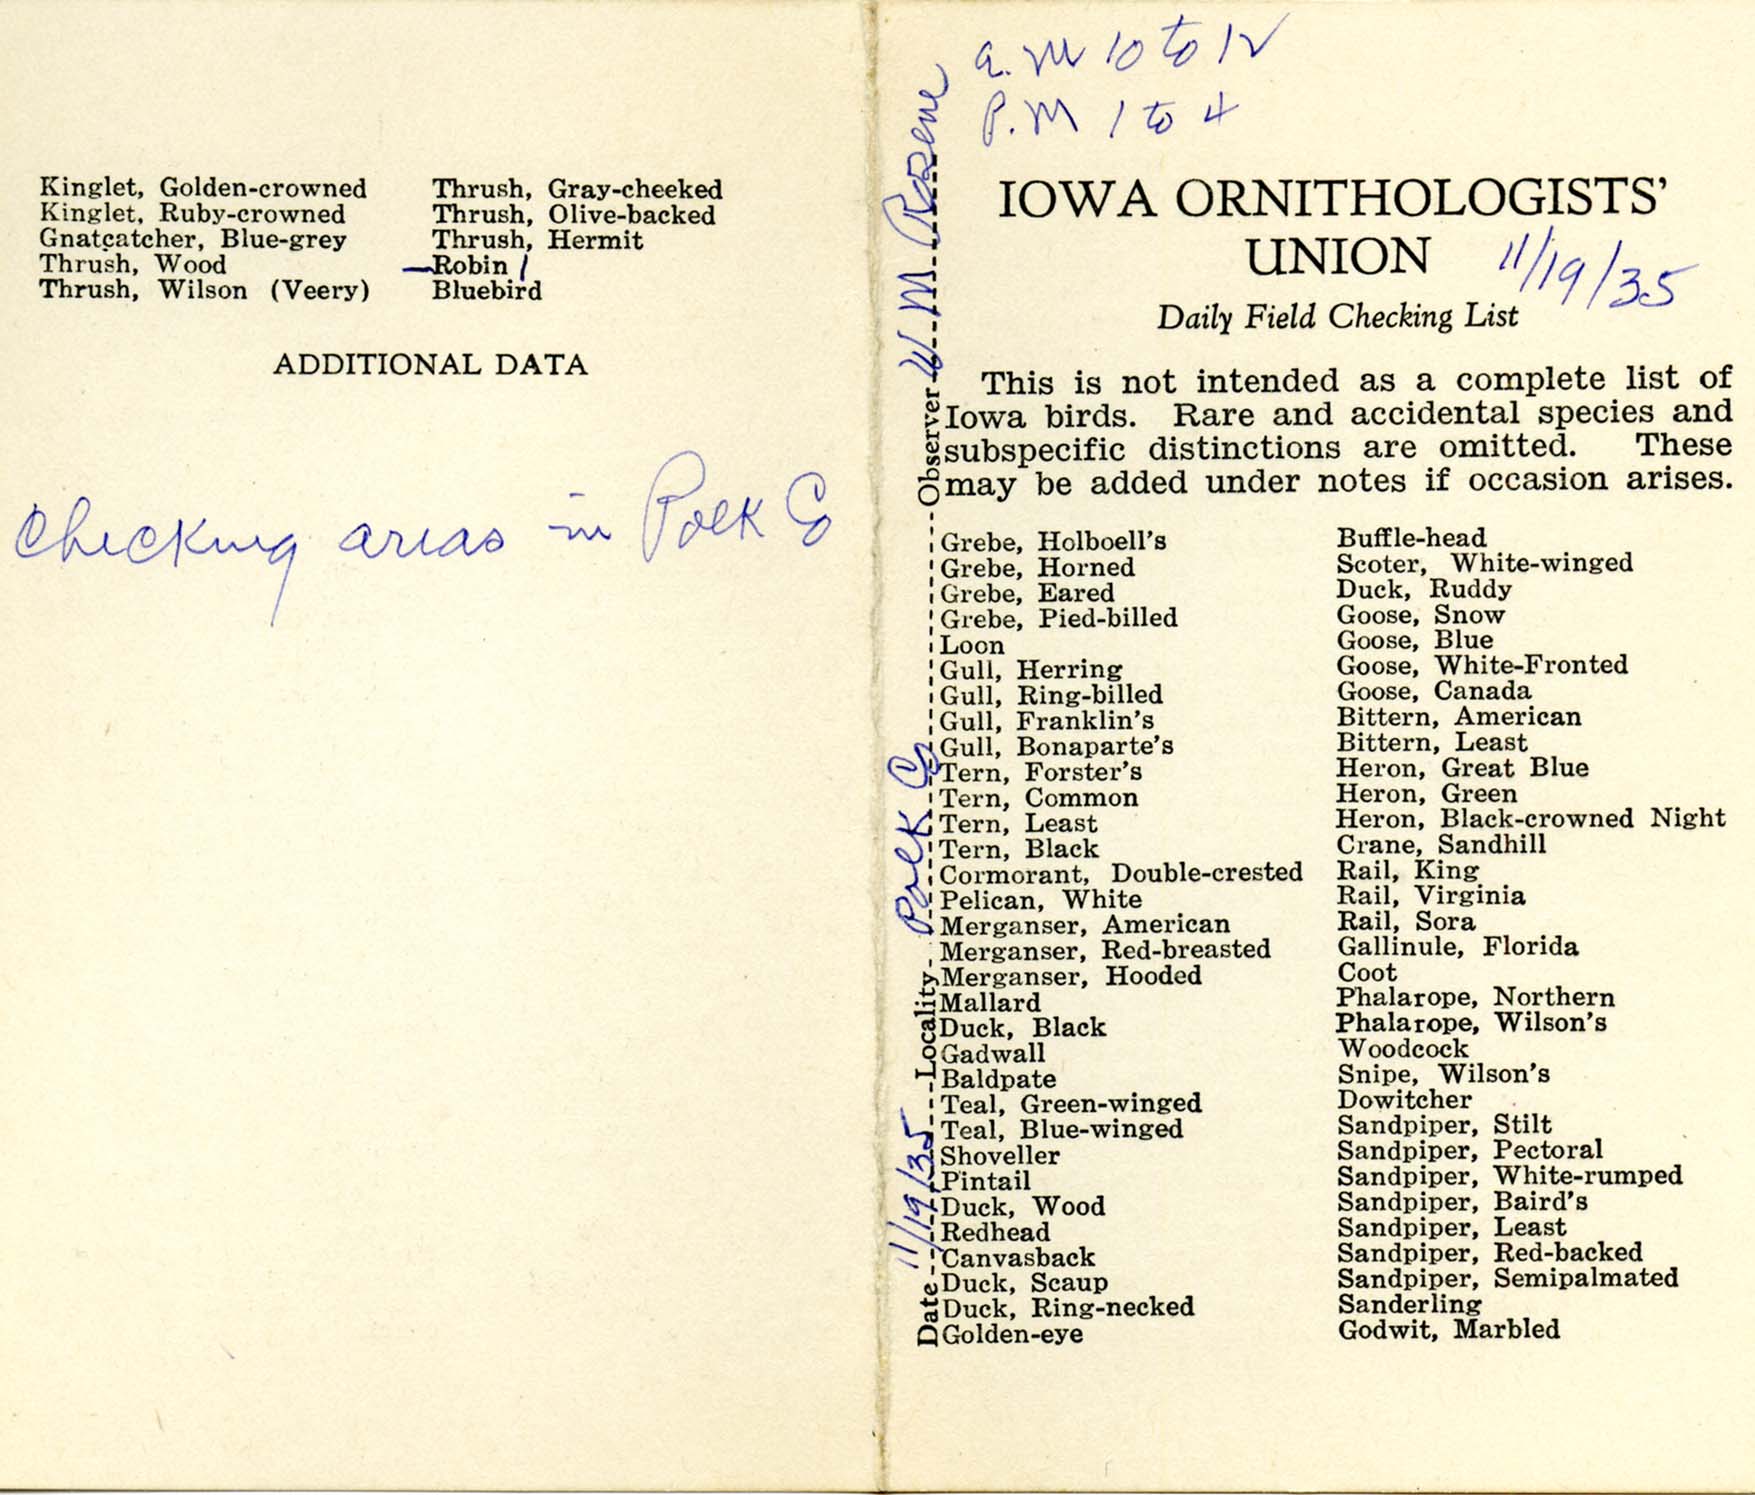 Daily field checking list, Walter Rosene, November 19, 1935